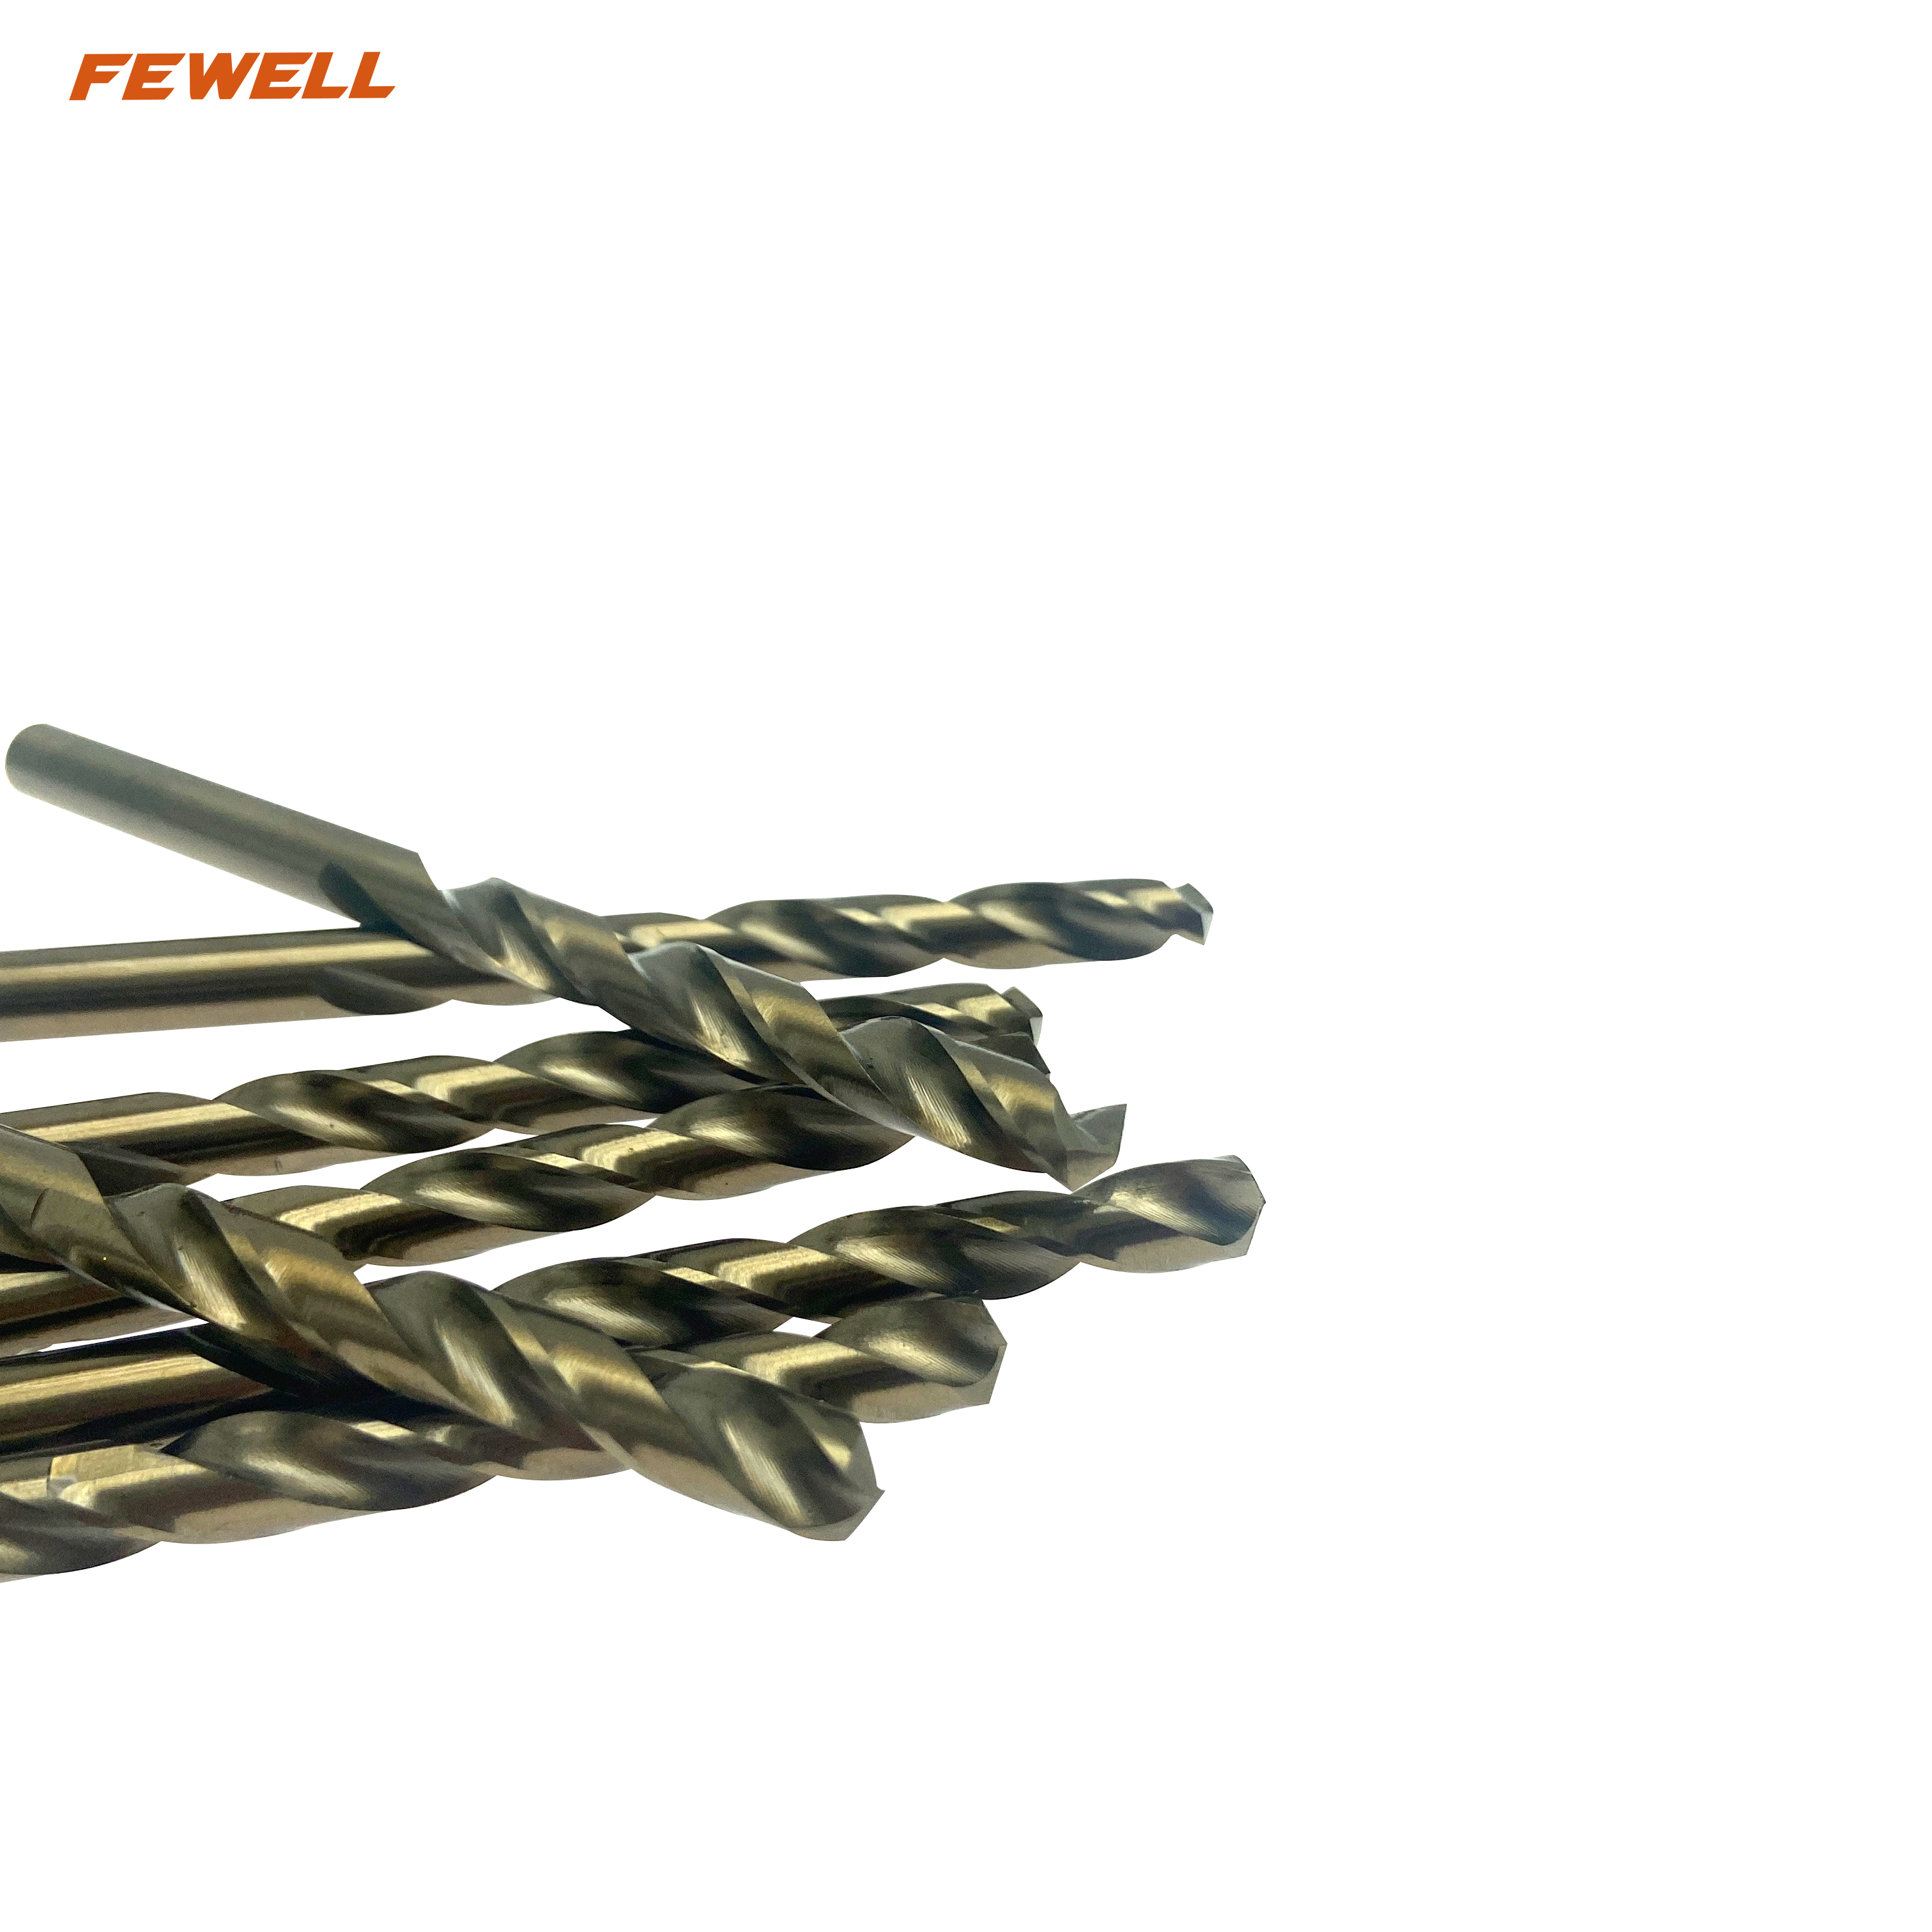 Brocas helicoidales HSS con mango cilíndrico M35 de 6 mm para taladrar metal, acero inoxidable y acero inoxidable